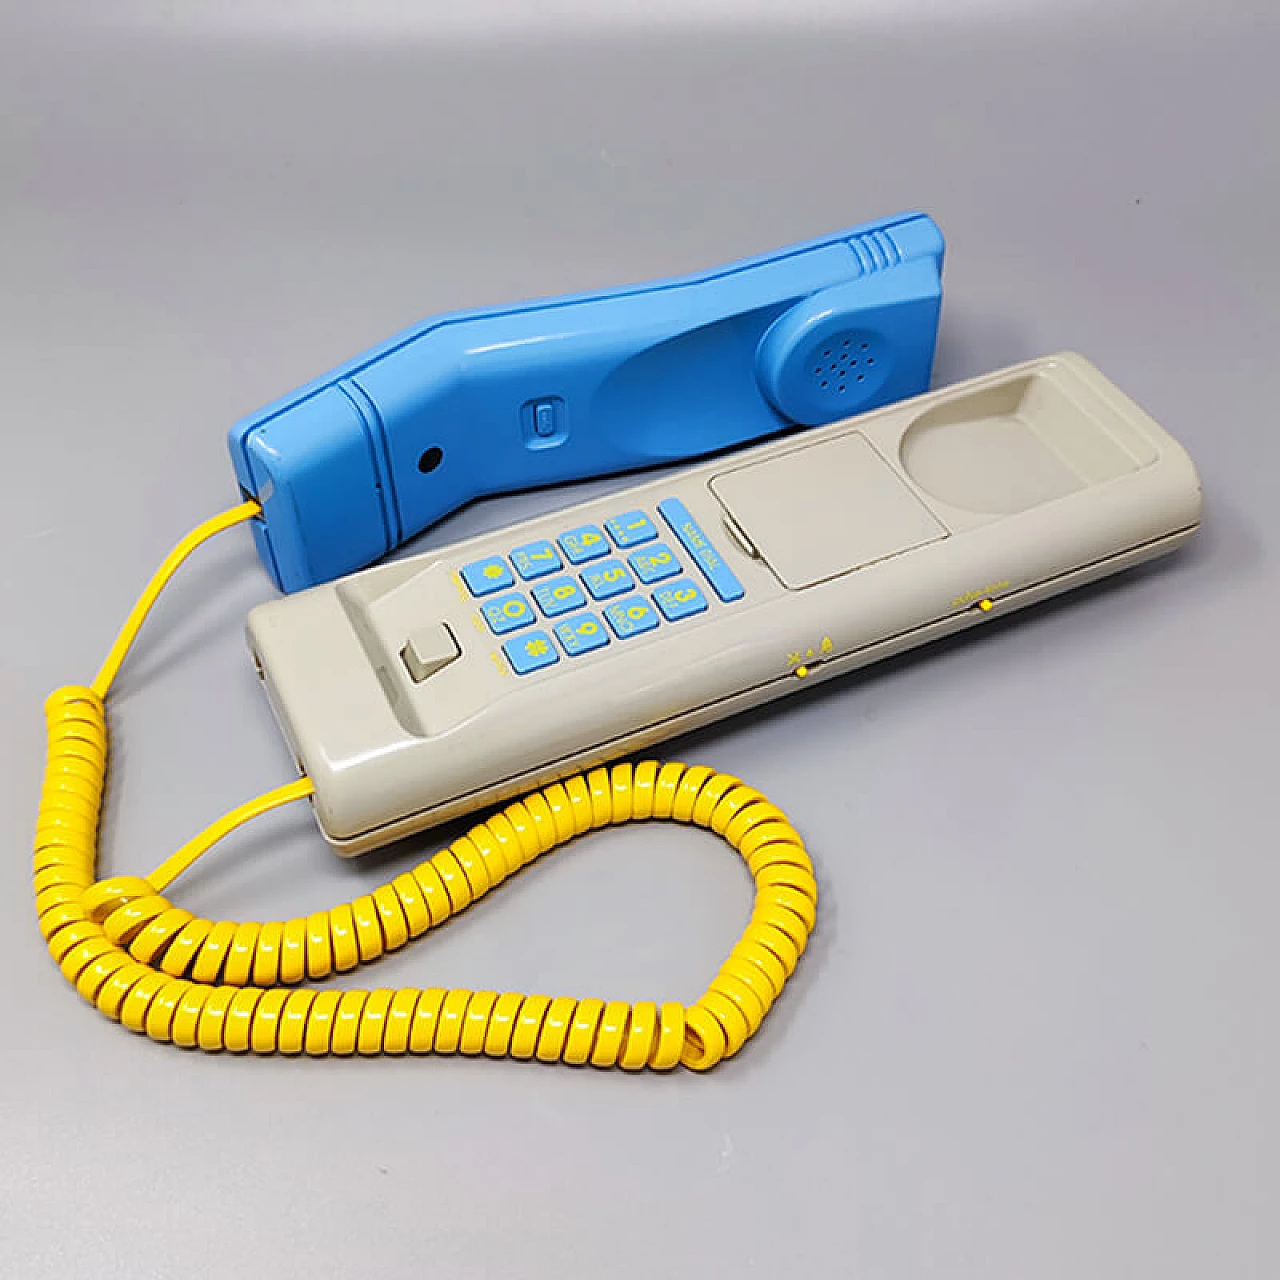 Swatch Twin Phone Deluxe landline, 1980s 7